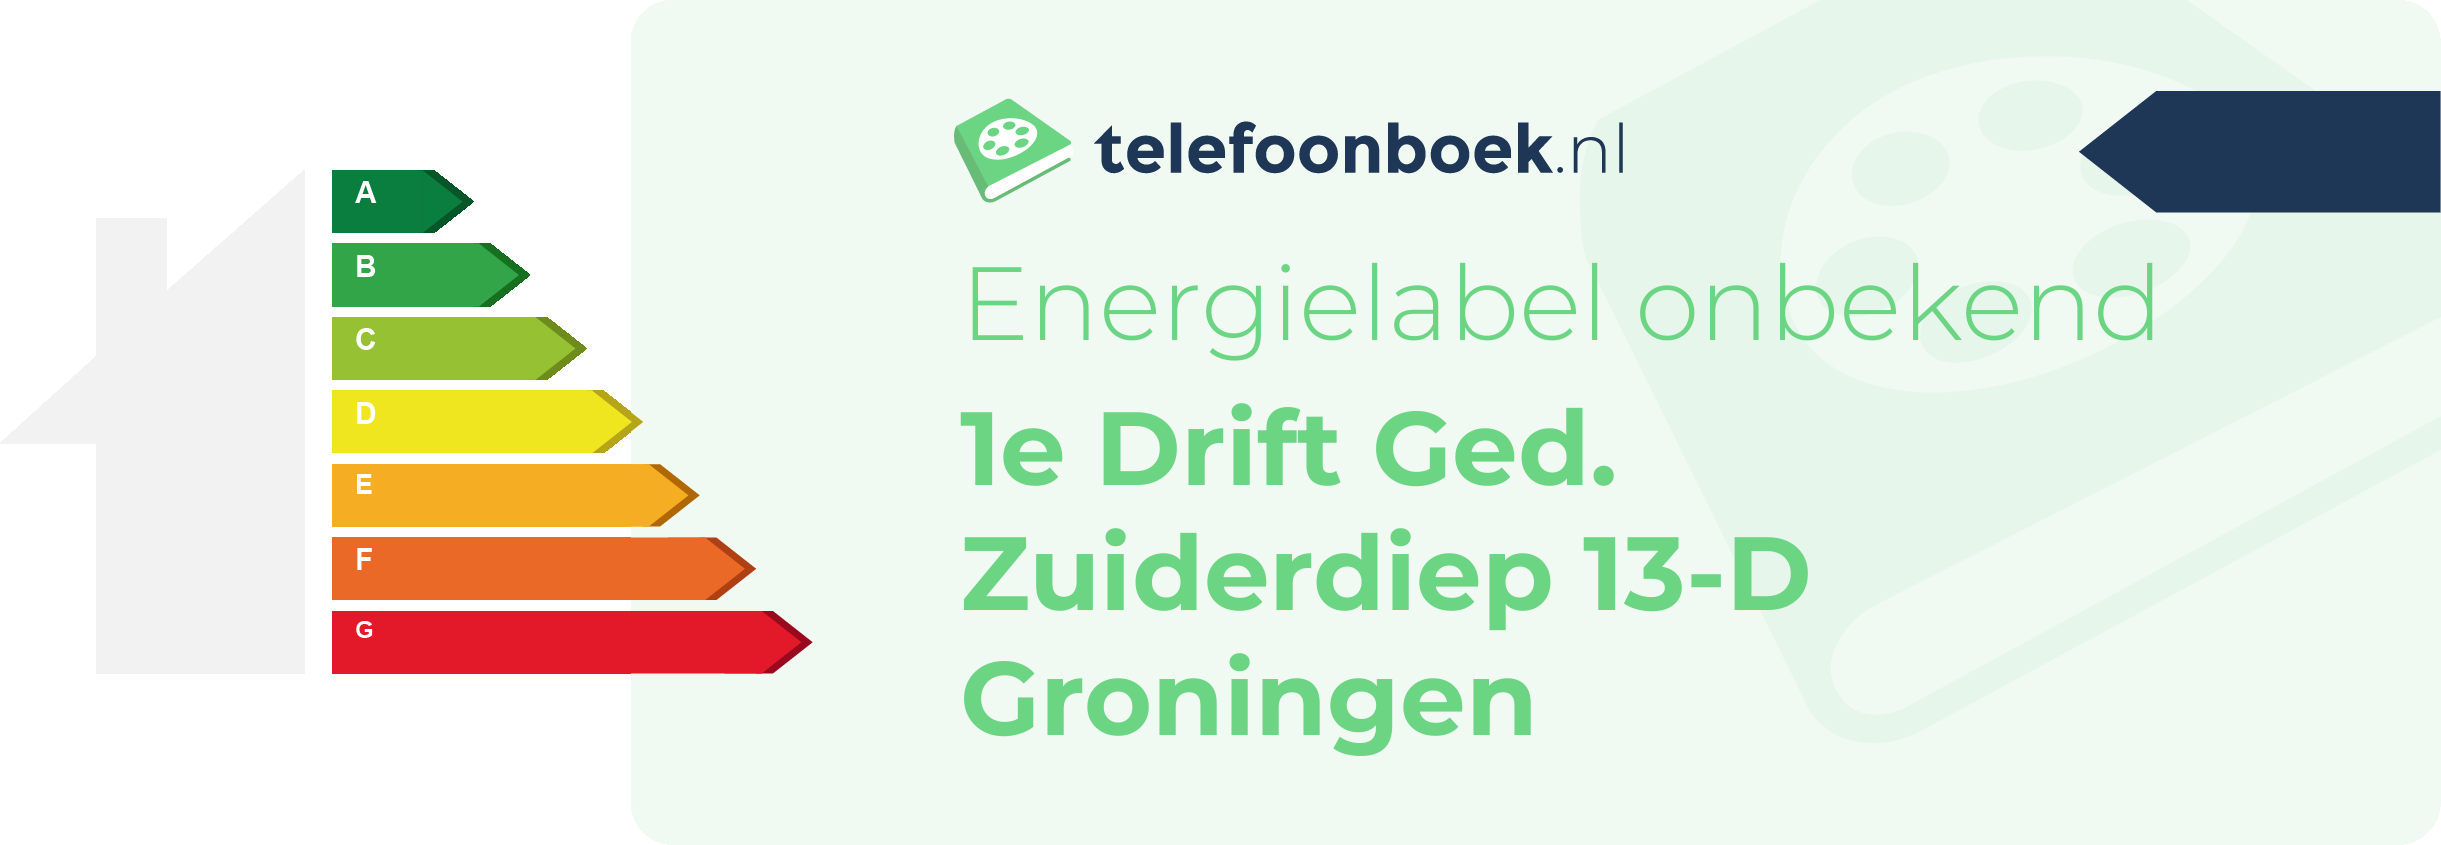 Energielabel 1e Drift Ged. Zuiderdiep 13-D Groningen